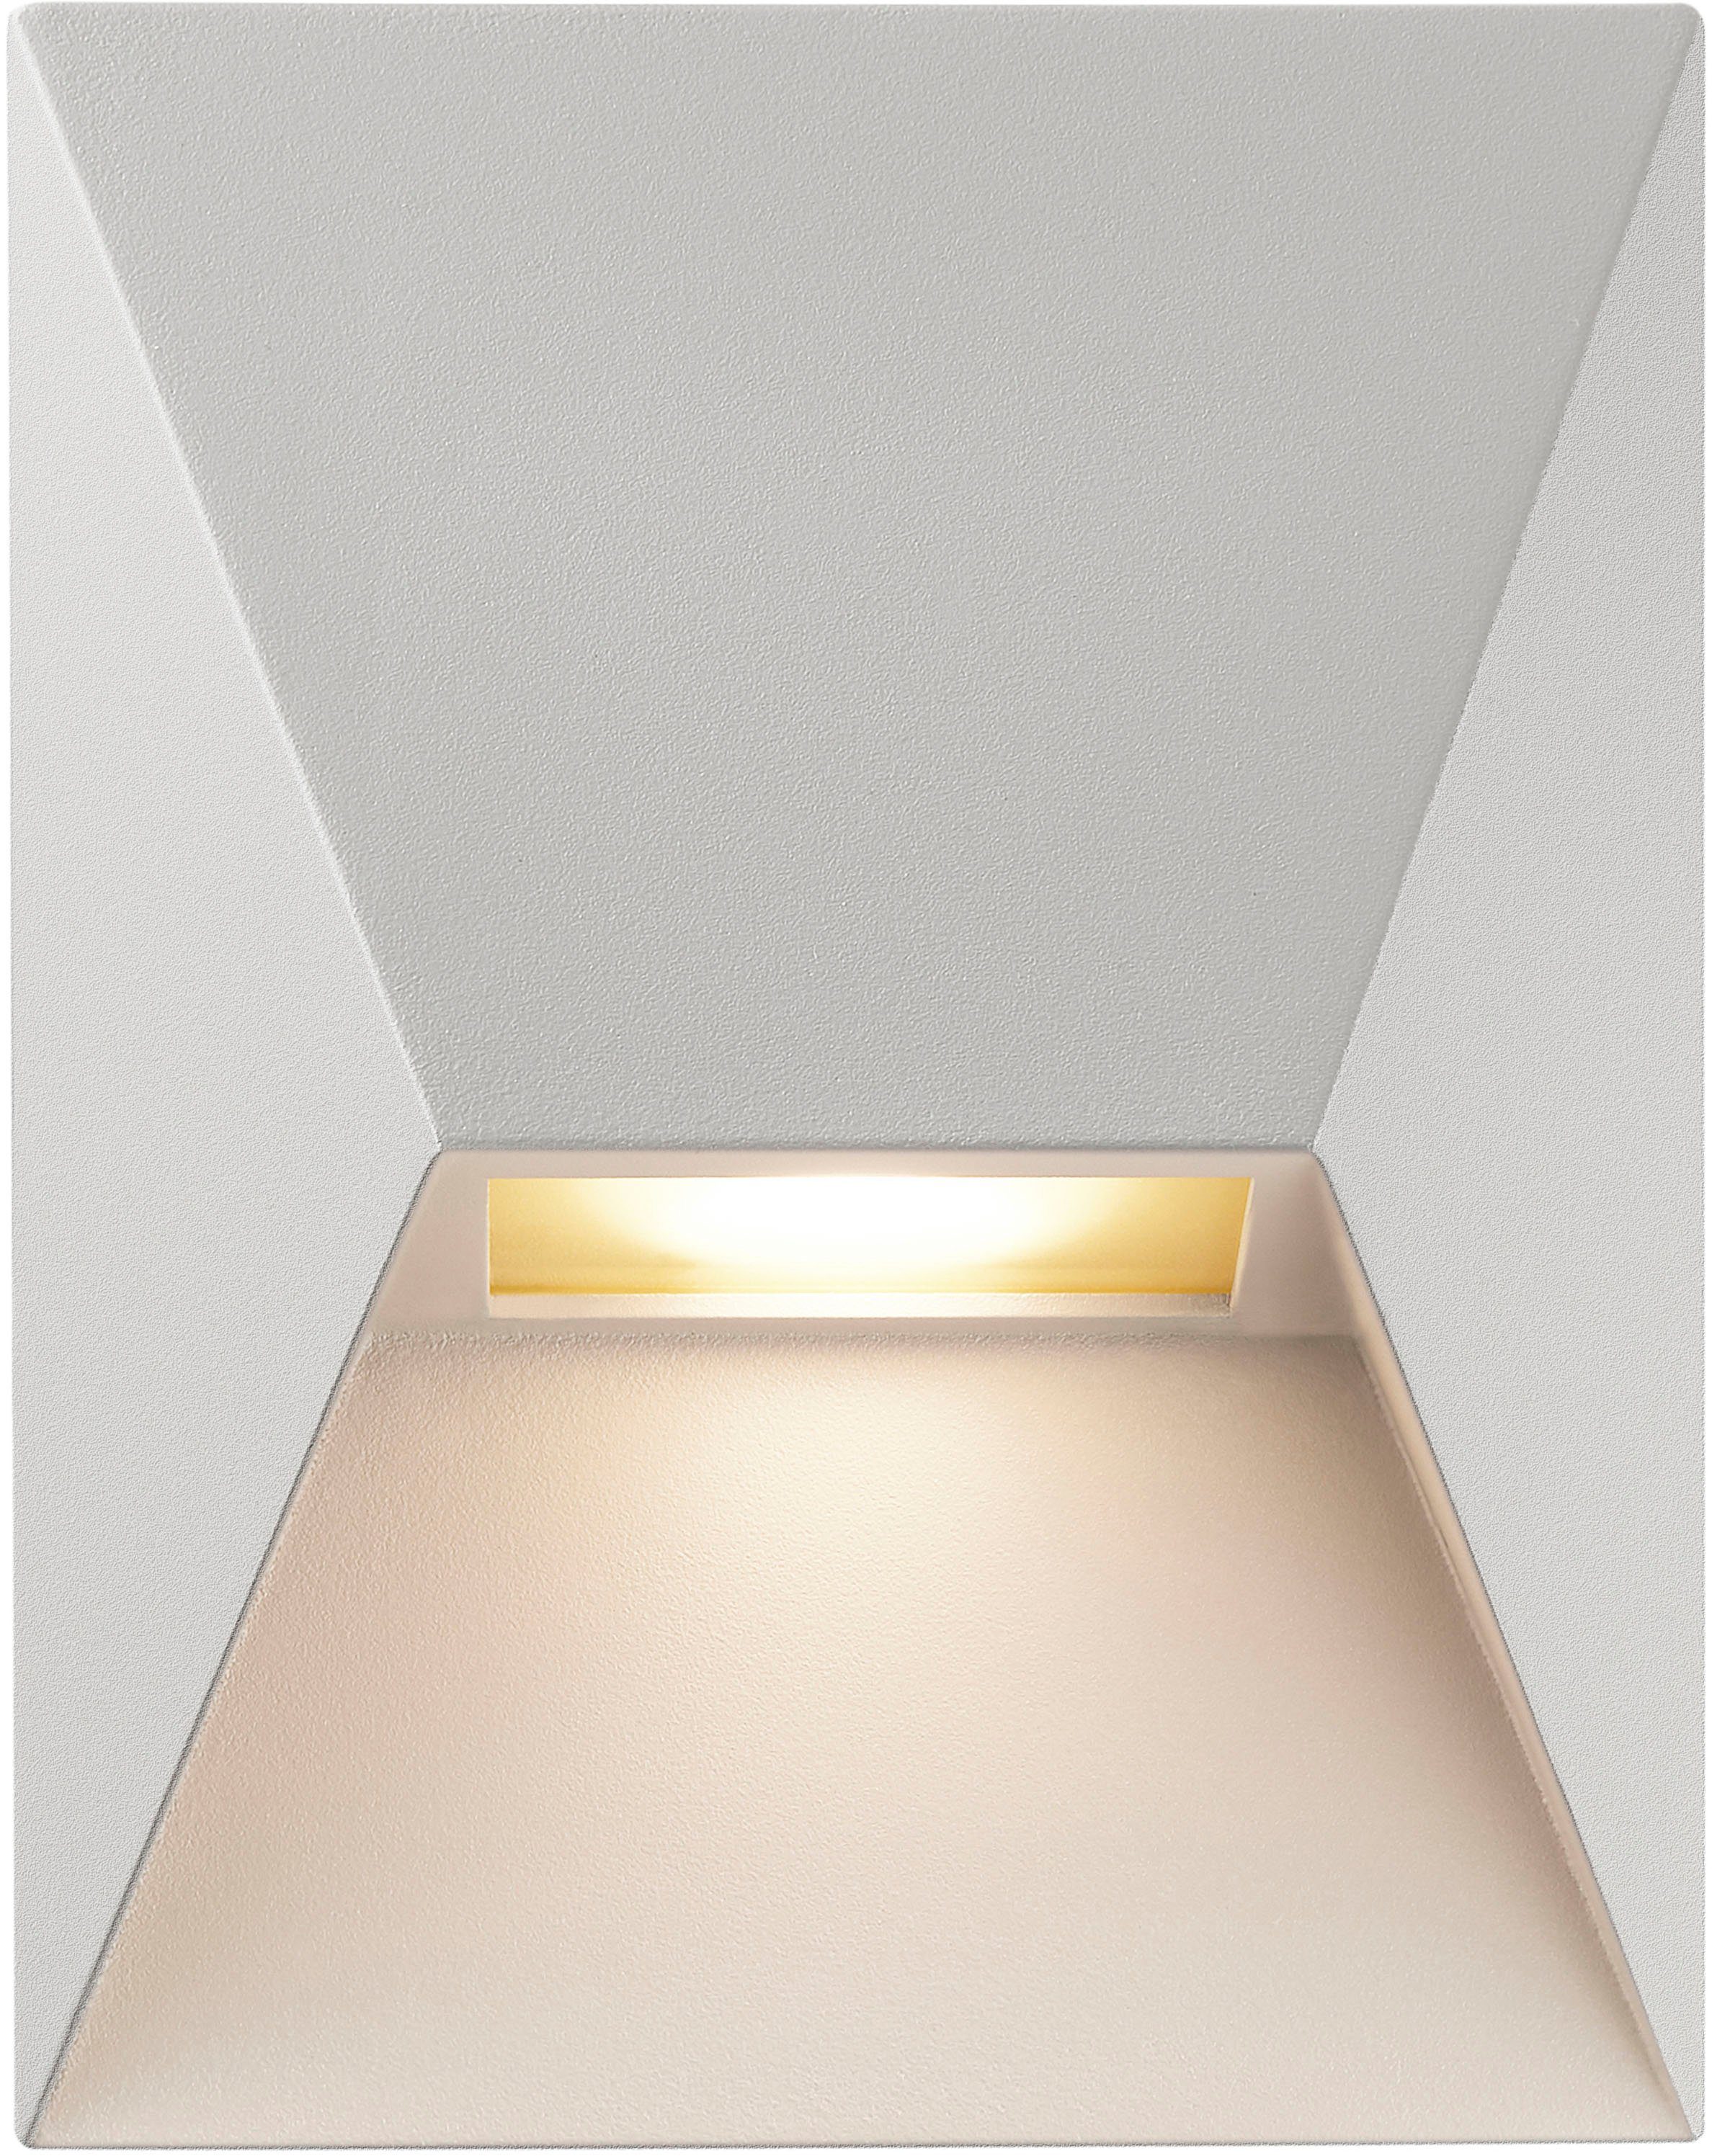 Nordlux vom Says Leuchtmittel, ohne Außen-Wandleuchte Design möglich, Architekturdesign, kompakte who Größe, Parallelschaltung Elegante Pontio, Designerduo dänischen